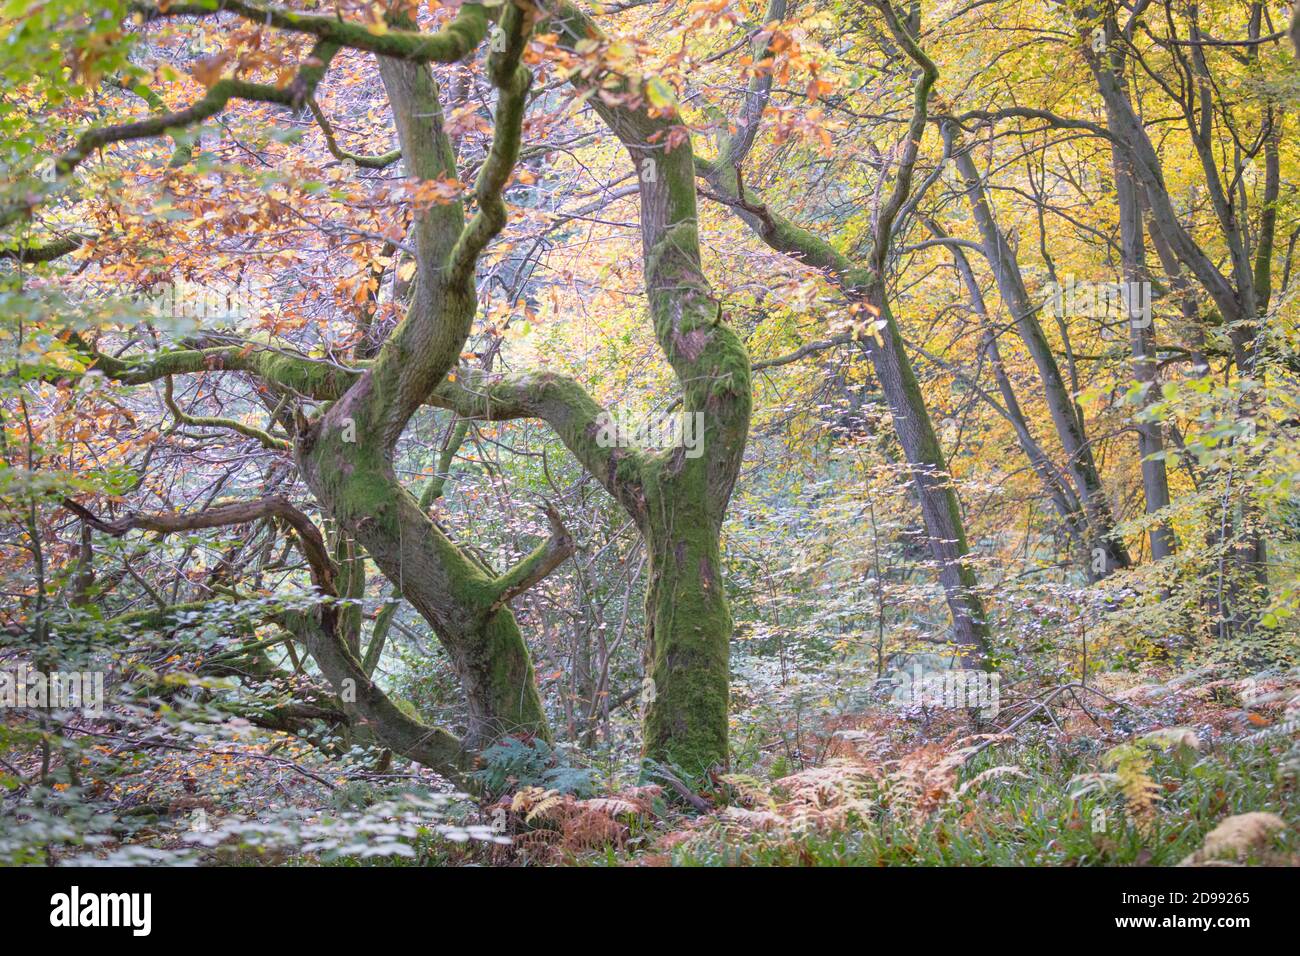 En automne, les anciens chênes se sont enroulés dans une forêt, avec des feuilles dorées et de la mousse de vert vif sur les troncs et les branches des arbres. Banque D'Images